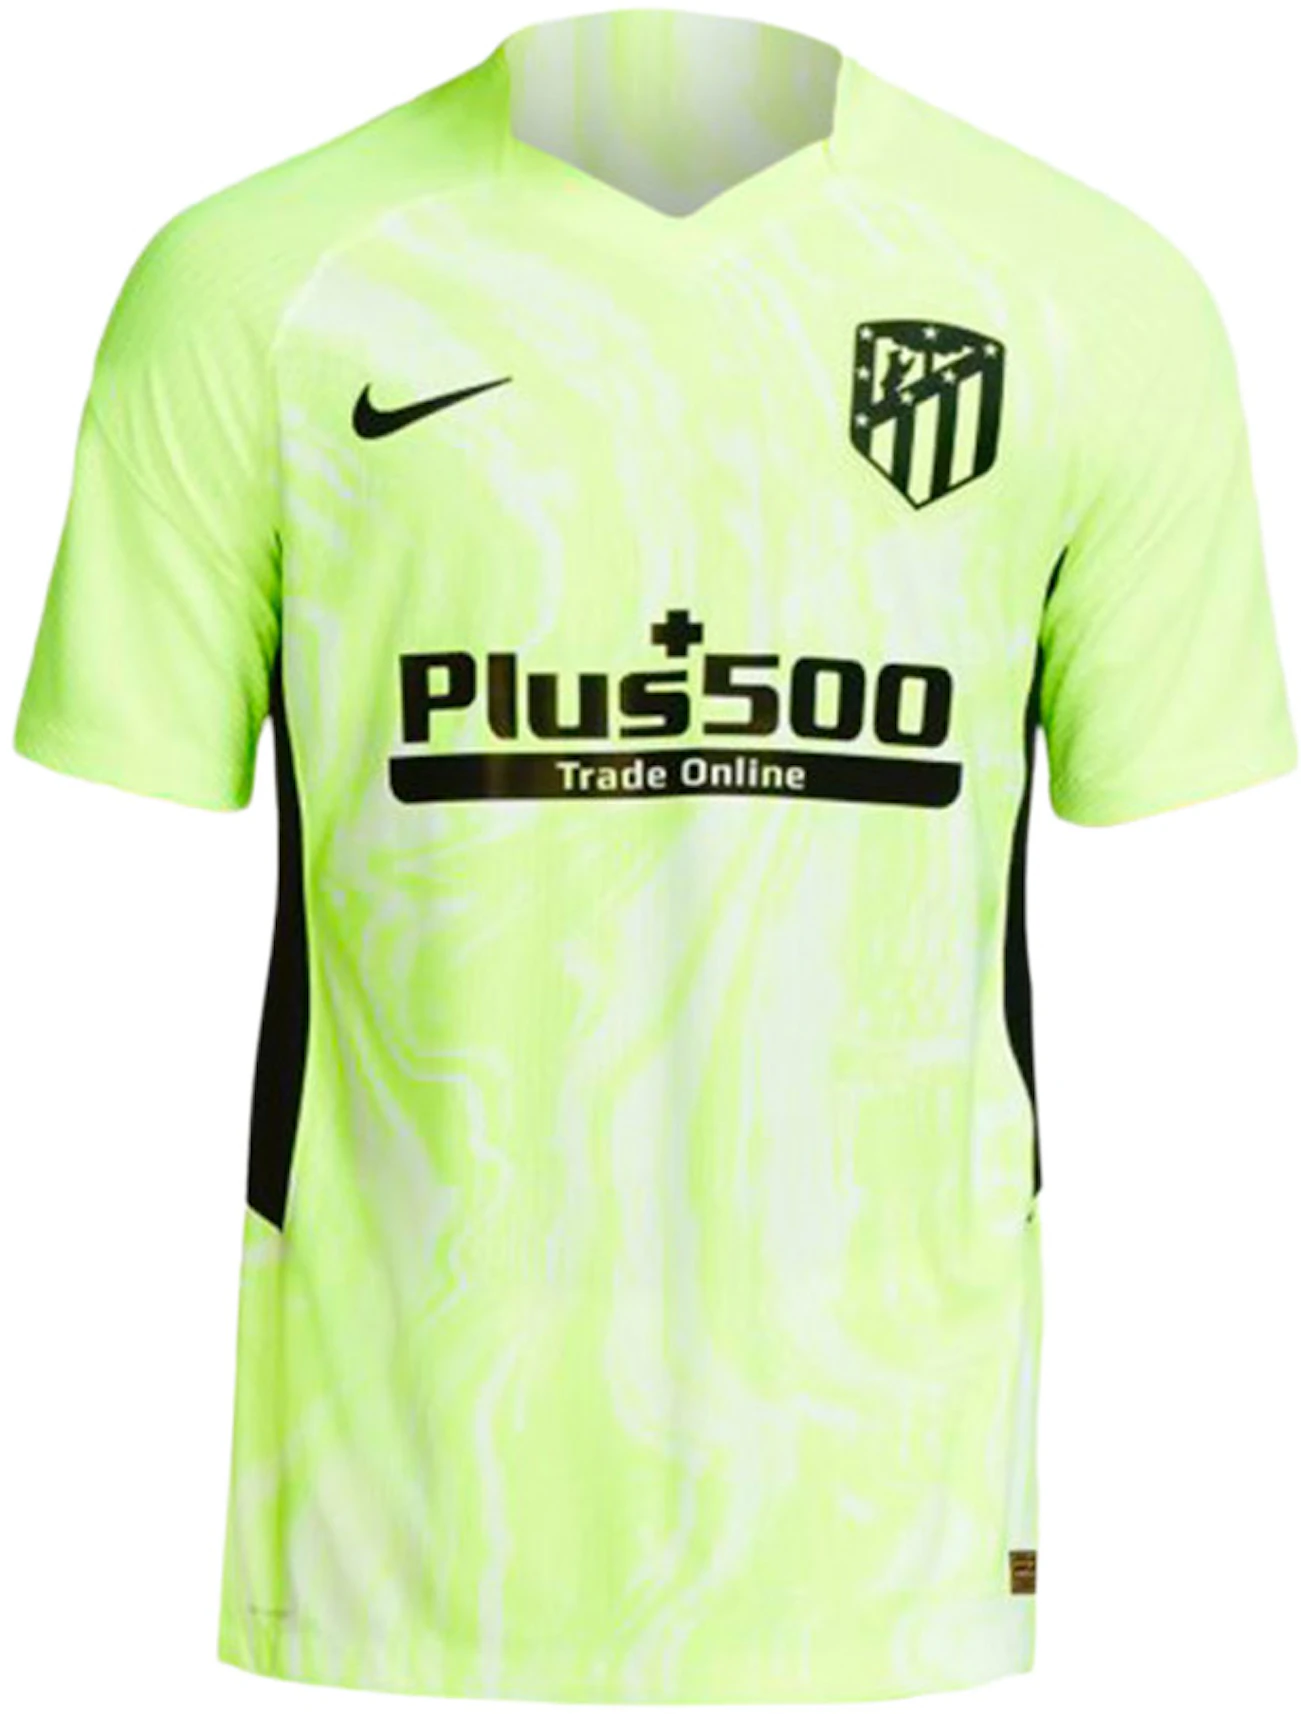 Loza de barro Puntuación lineal Nike Atletico Madrid 2020-2021 Vapor Third Jersey Neon Yellow Men's - US